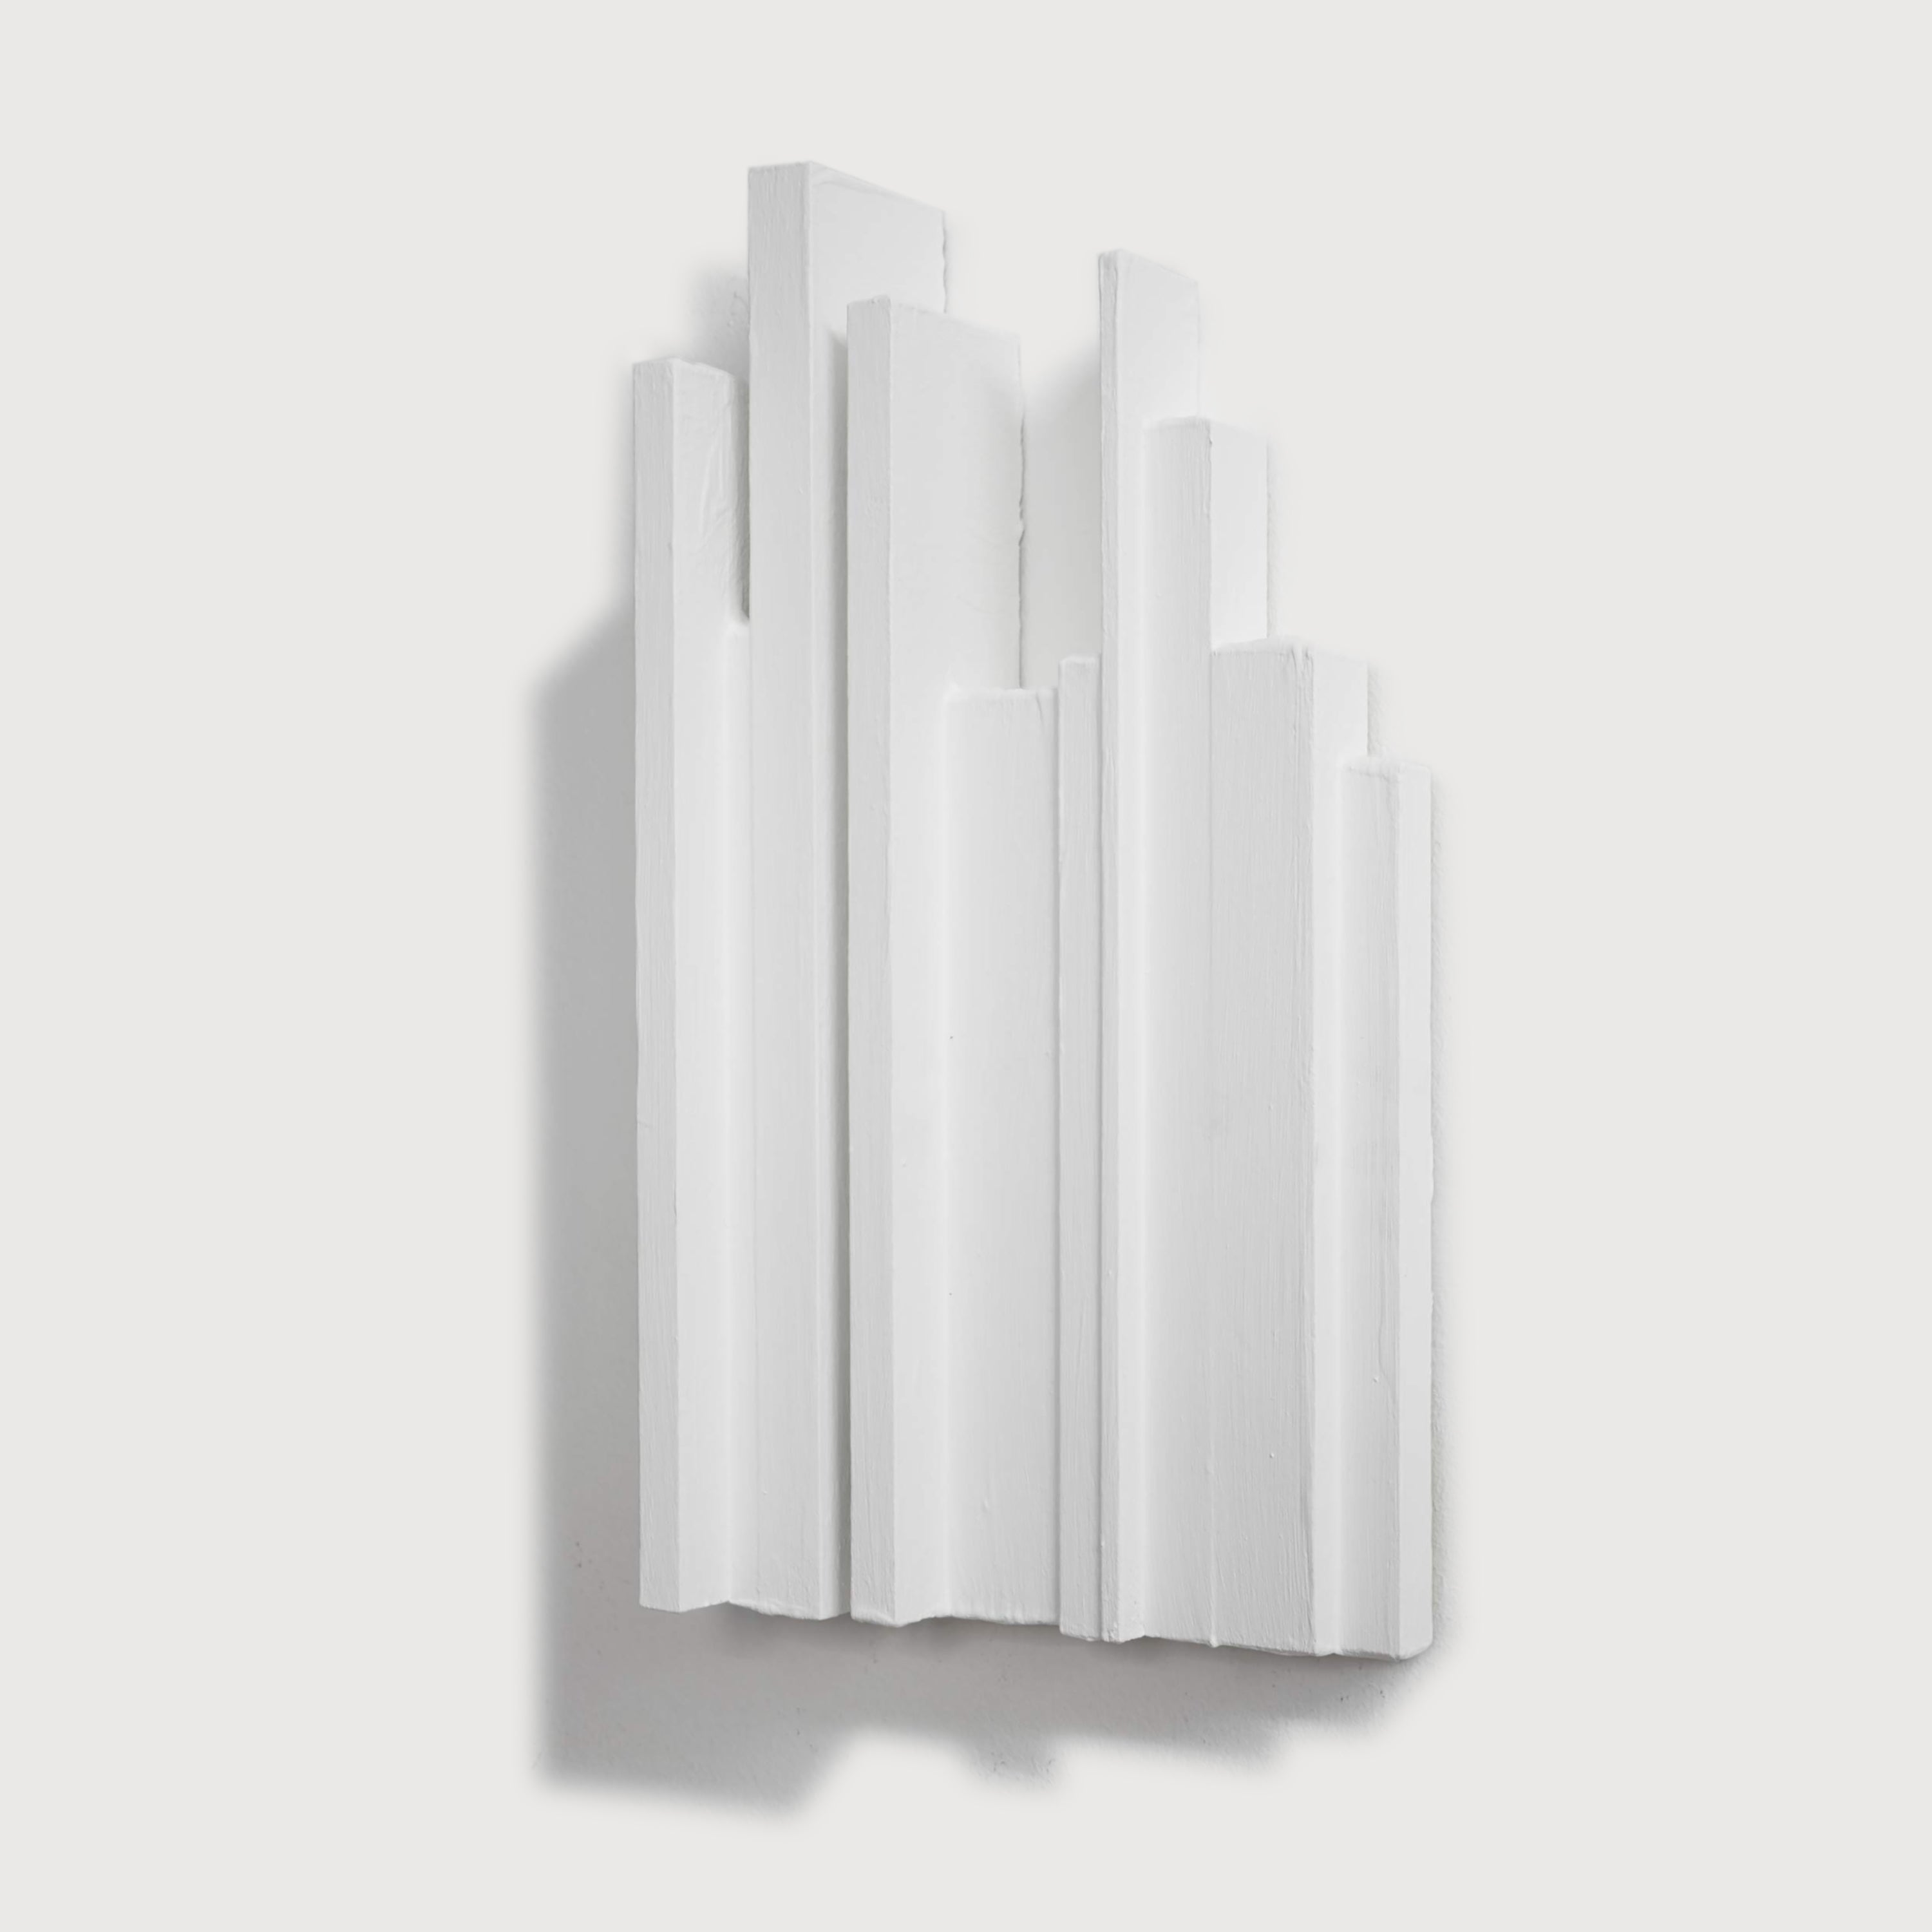 Eleven White Boetti Spines / edition 2020